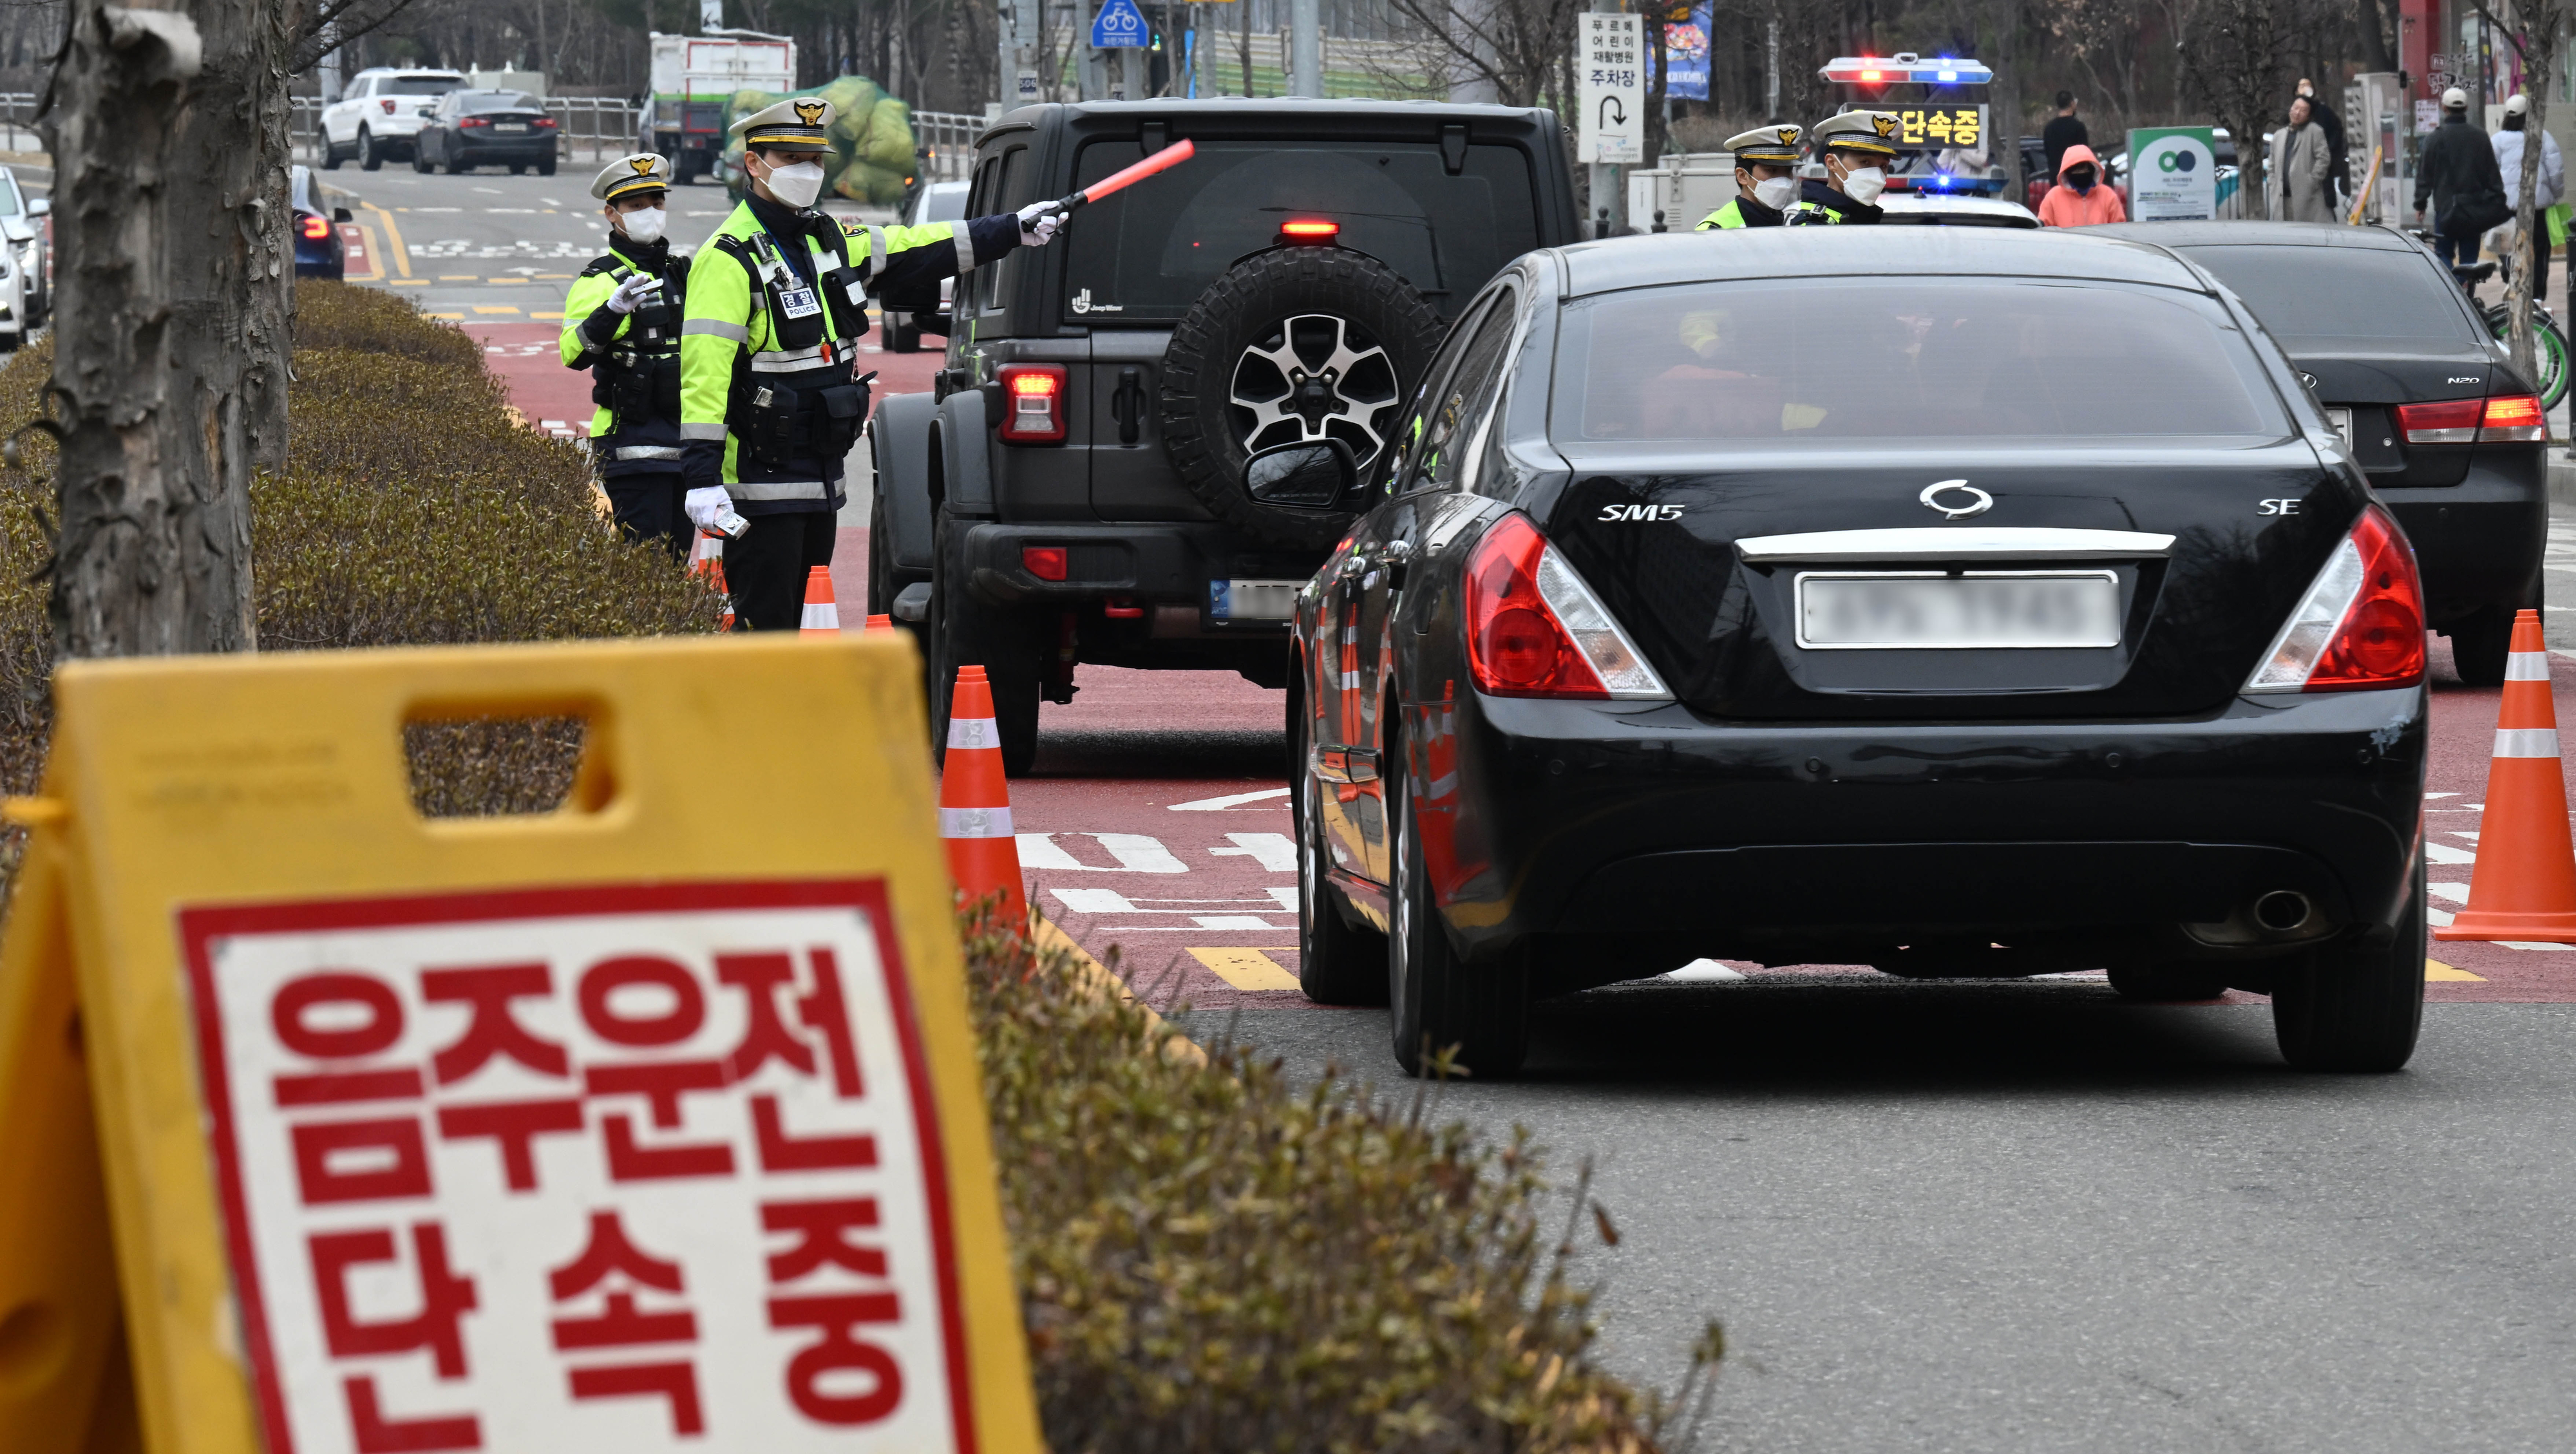 최근 현직 경찰의 비위가 잇따르면서 경찰 지휘부가 대책 마련에 나섰다. 사진은 경찰이 지난 12일 서울의 한 도로에서 음주운전 특별단속을 하는 모습. 홍윤기 기자